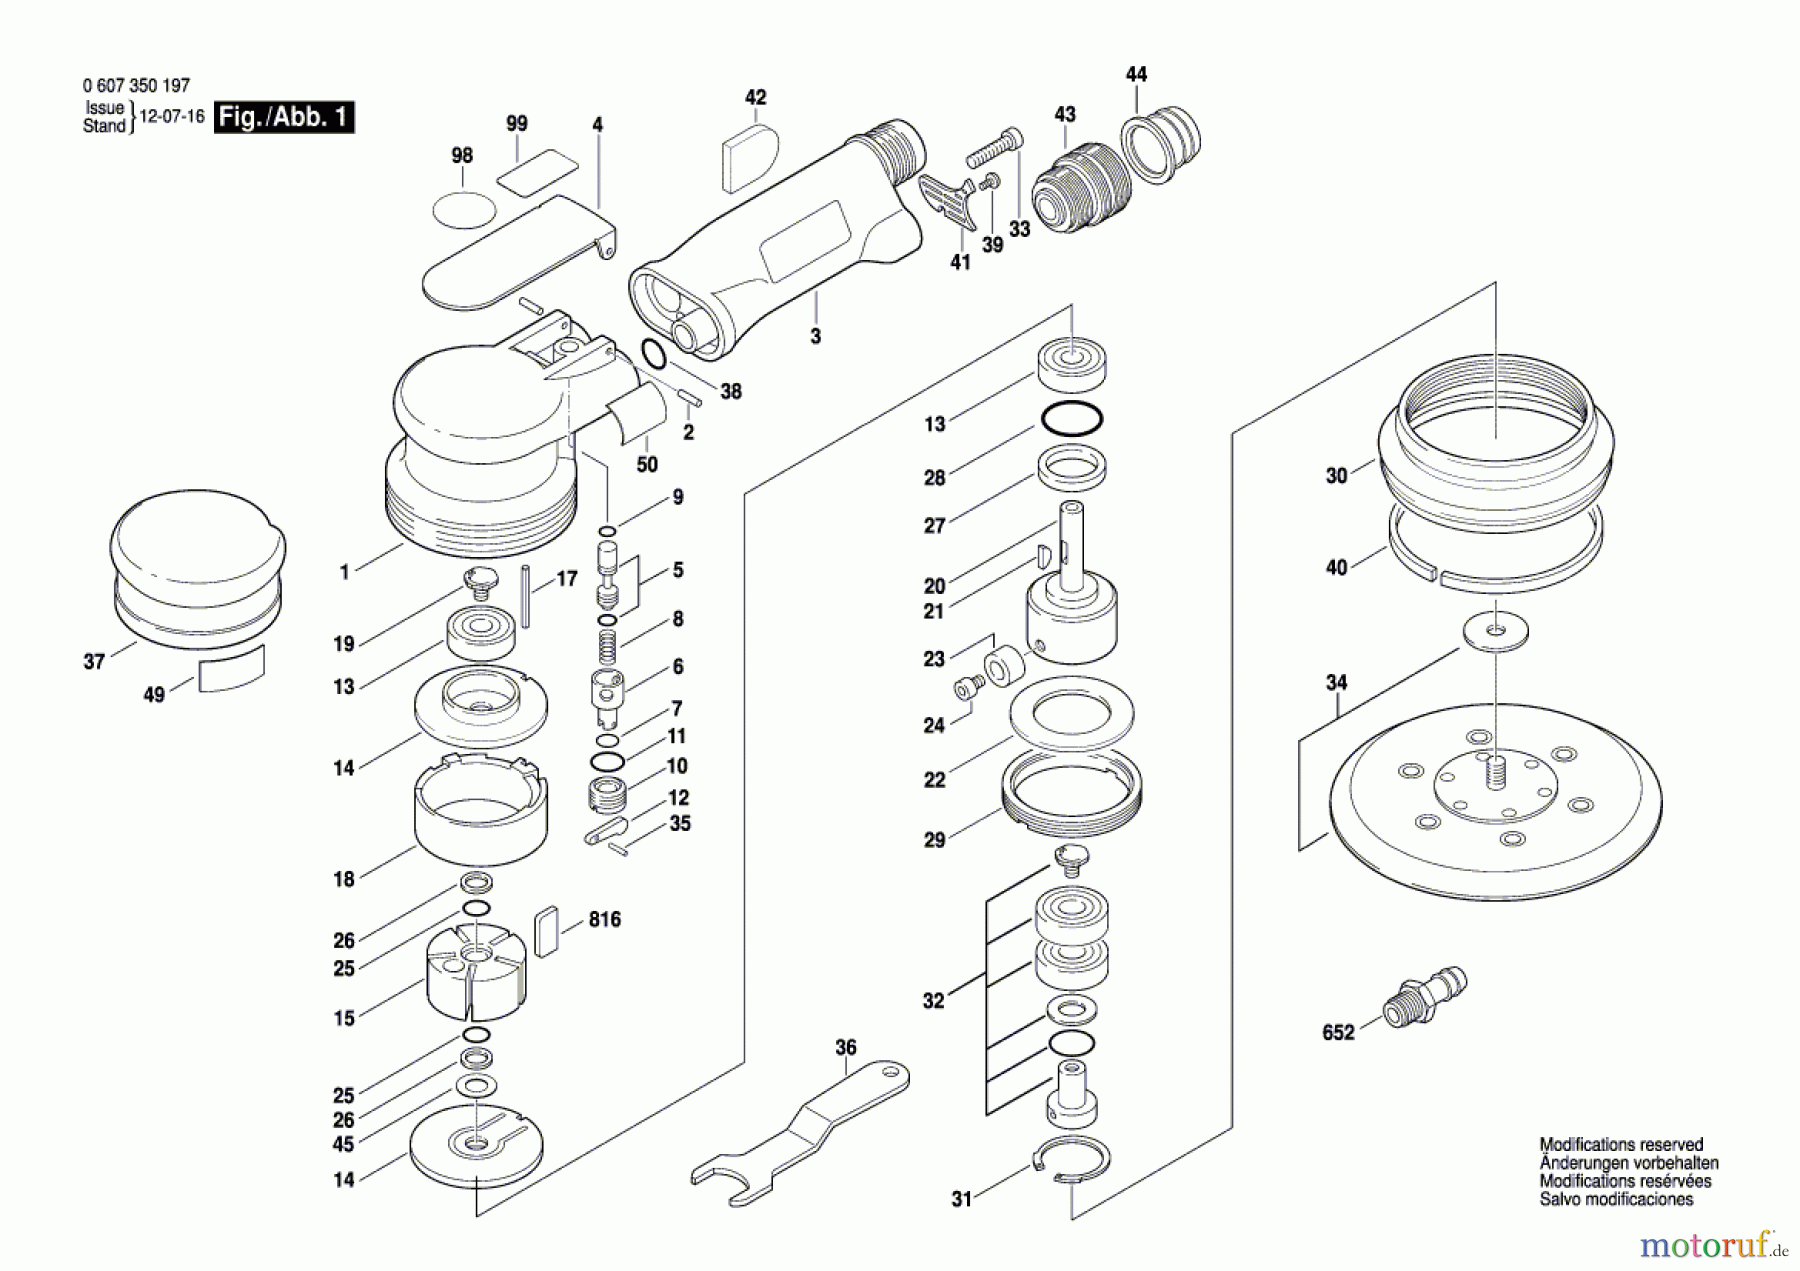  Bosch Werkzeug Exzenterschleifer 170 WATT-SERIE Seite 1